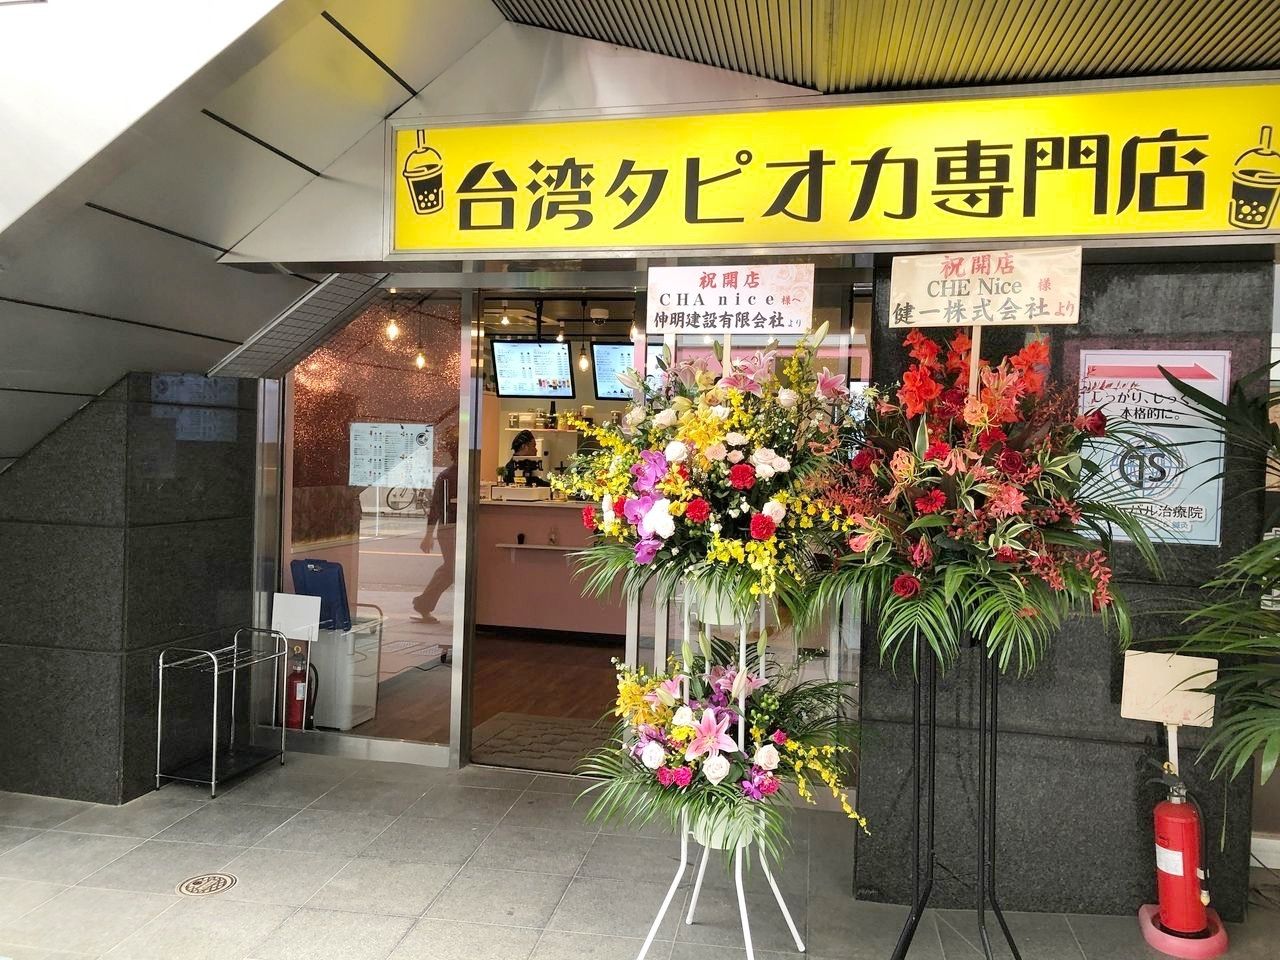 三鷹にオープン「台湾タピオカ専門店」